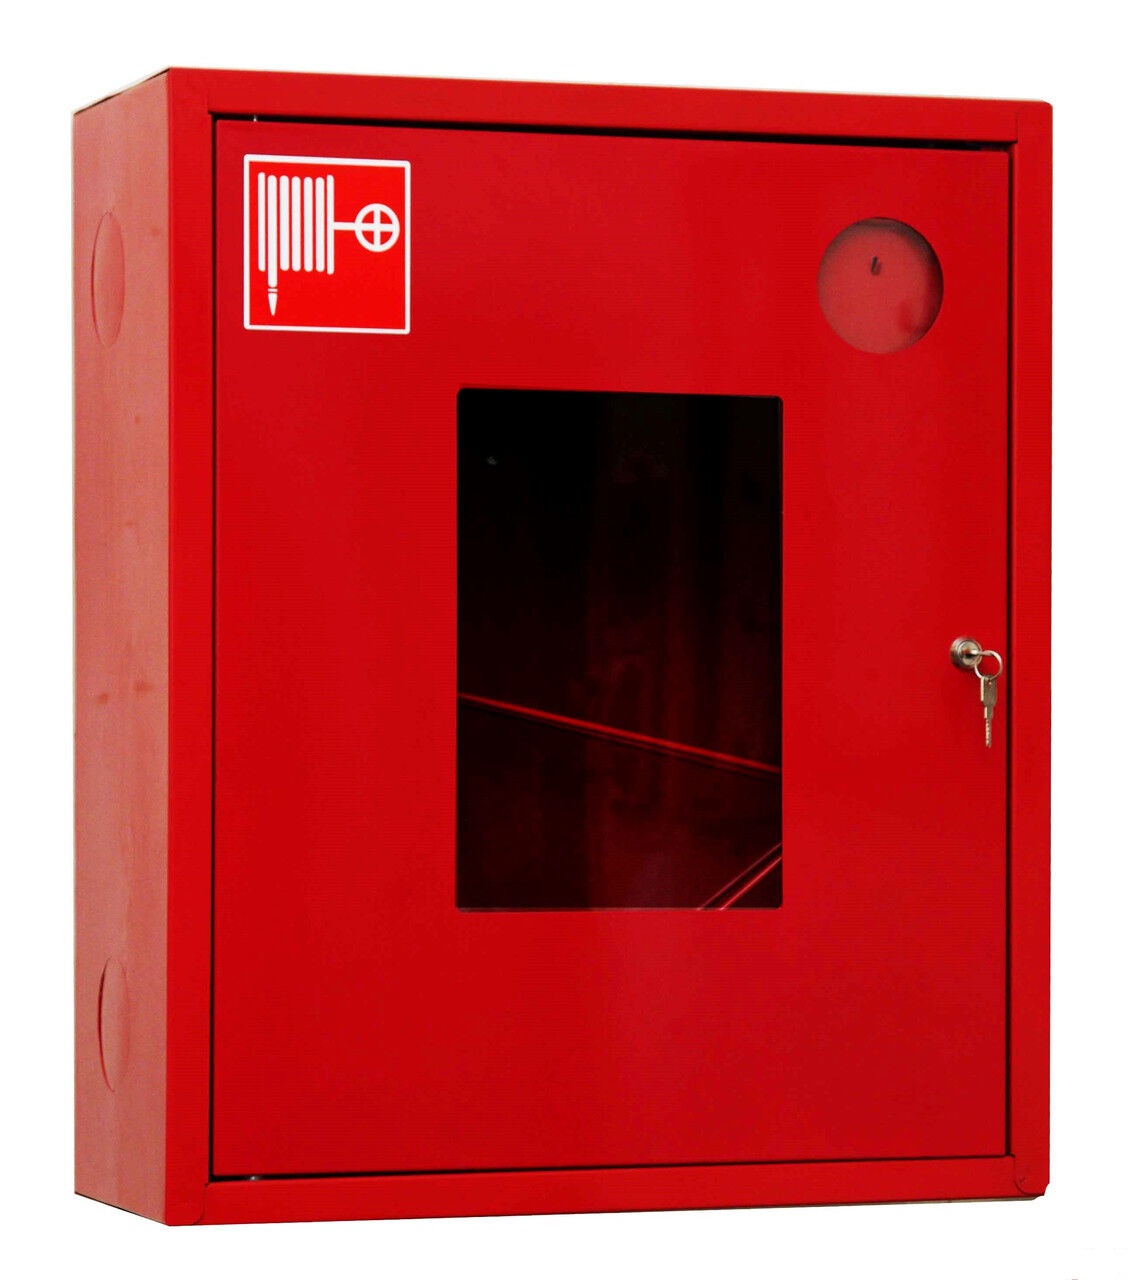 Пожарный кран размеры. Шкаф пожарный ШПК-310н. Шкаф пожарный ШПК-310 НОК. Шкаф пожарный ШПК-310 НОБ. Шкаф пожарный ШПК-01 (ШПК-310) НОК (навесной, открытый, красный).